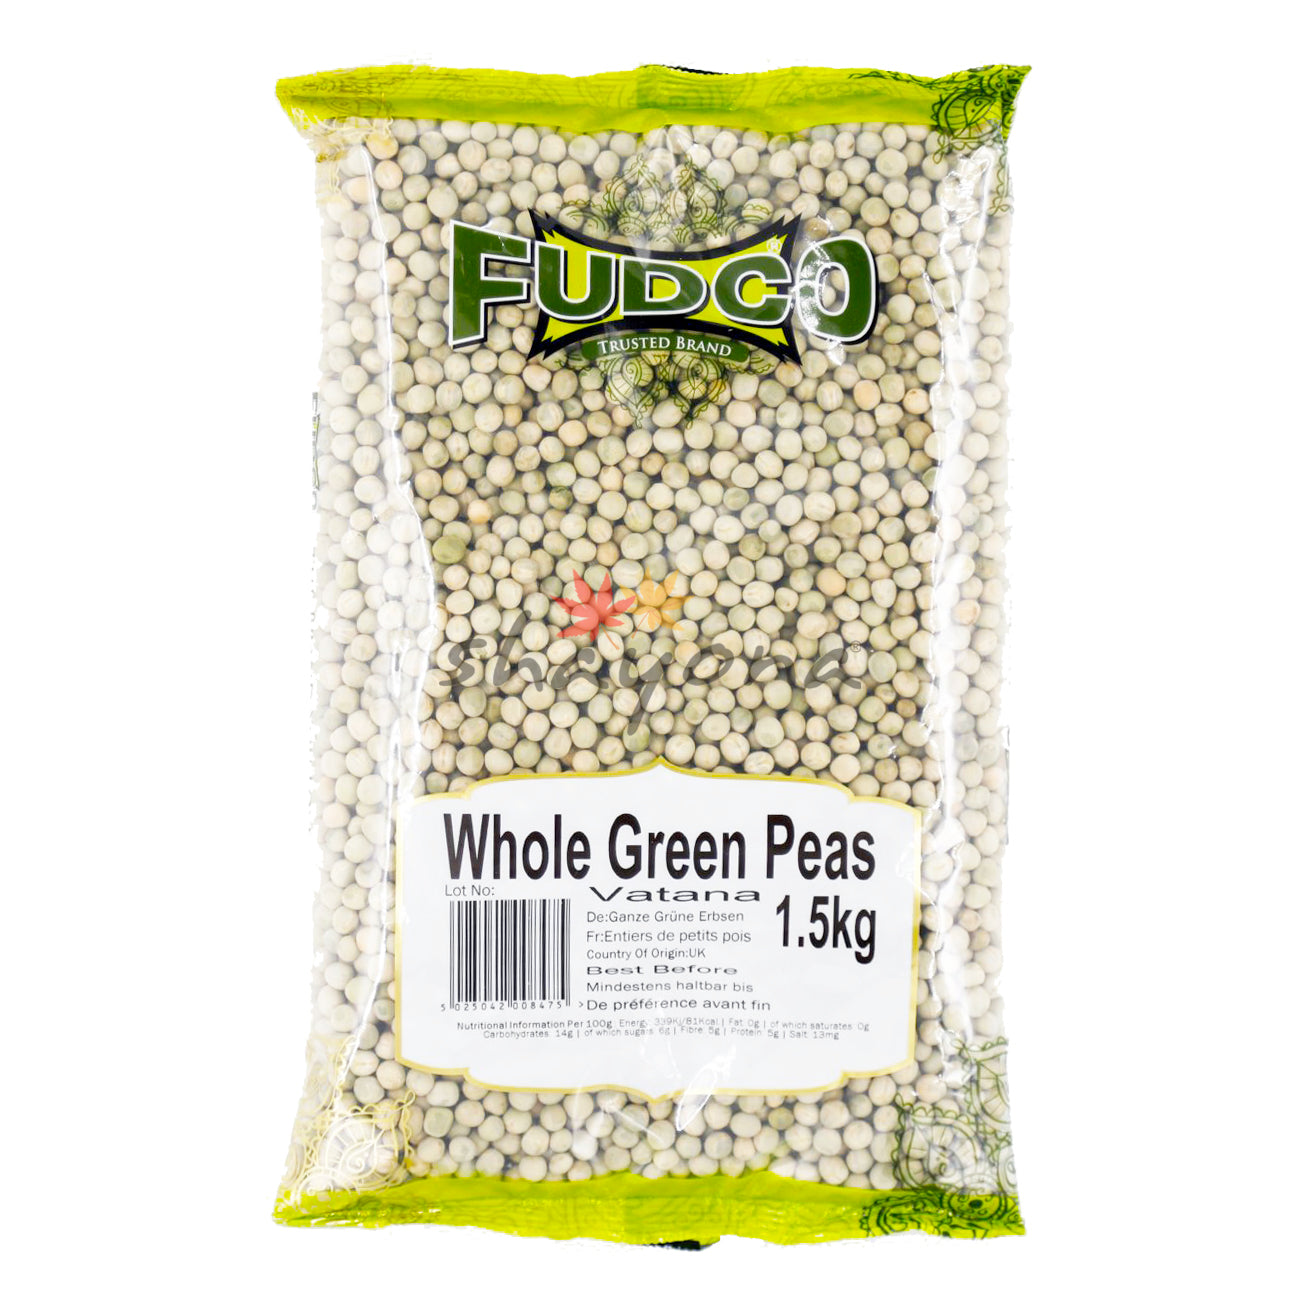 Fudco Whole Green Peas